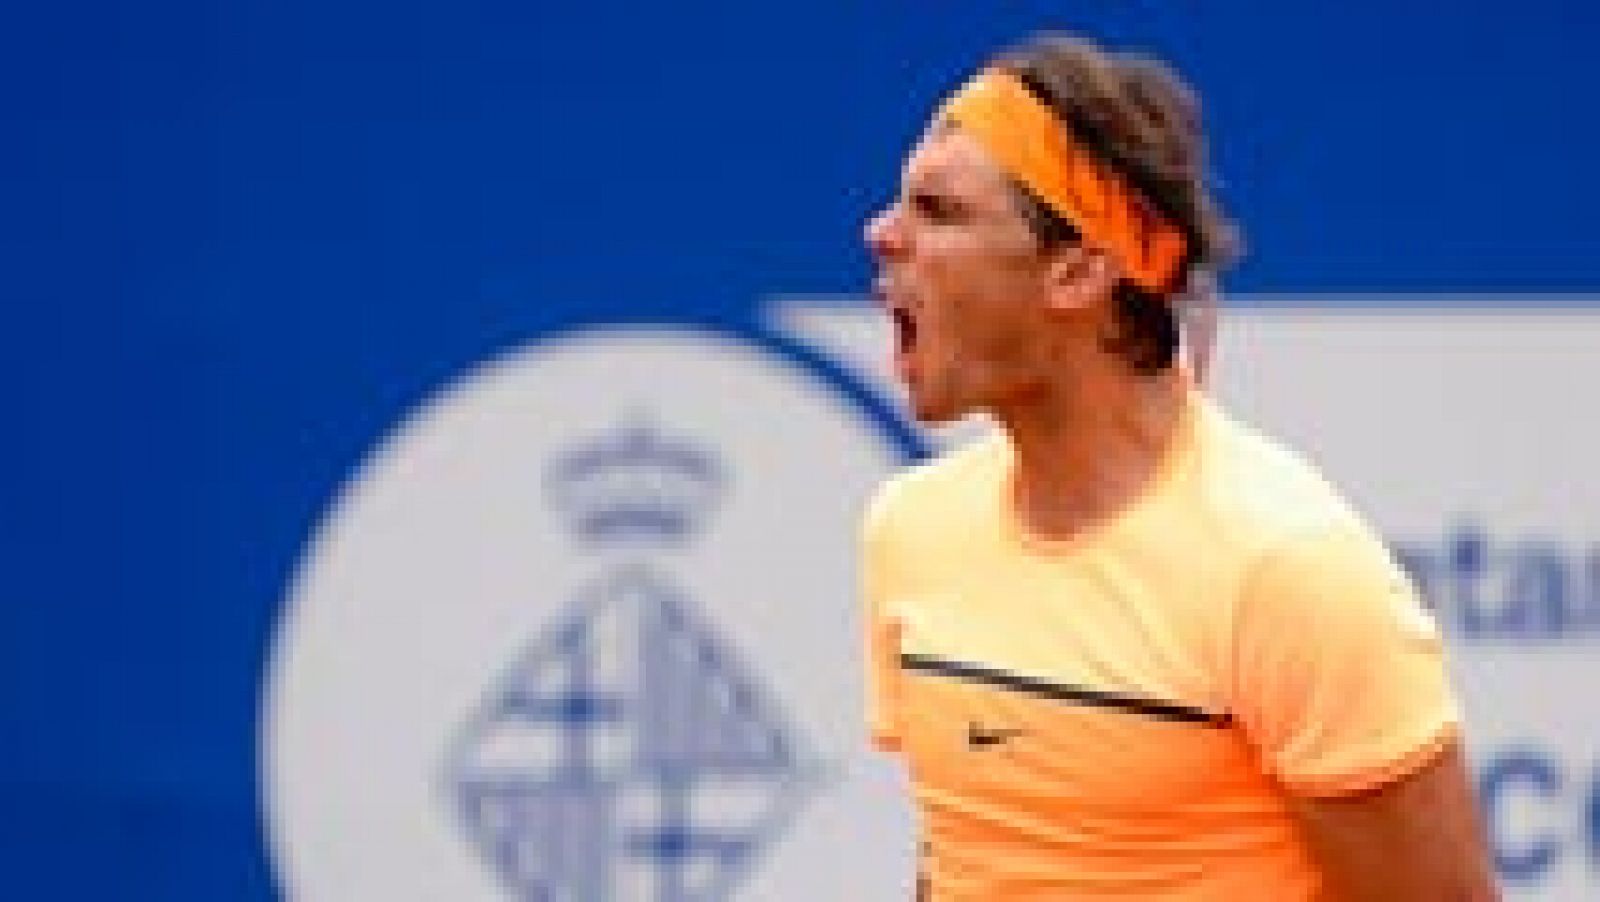 El español Rafa Nadal, número cinco del mundo, está en semifinales del torneo Conde de Godó tras vencer al italiano Fabio Fognini, número 31, por 6-2 y 7-6, en cerca de dos horas de partido. 